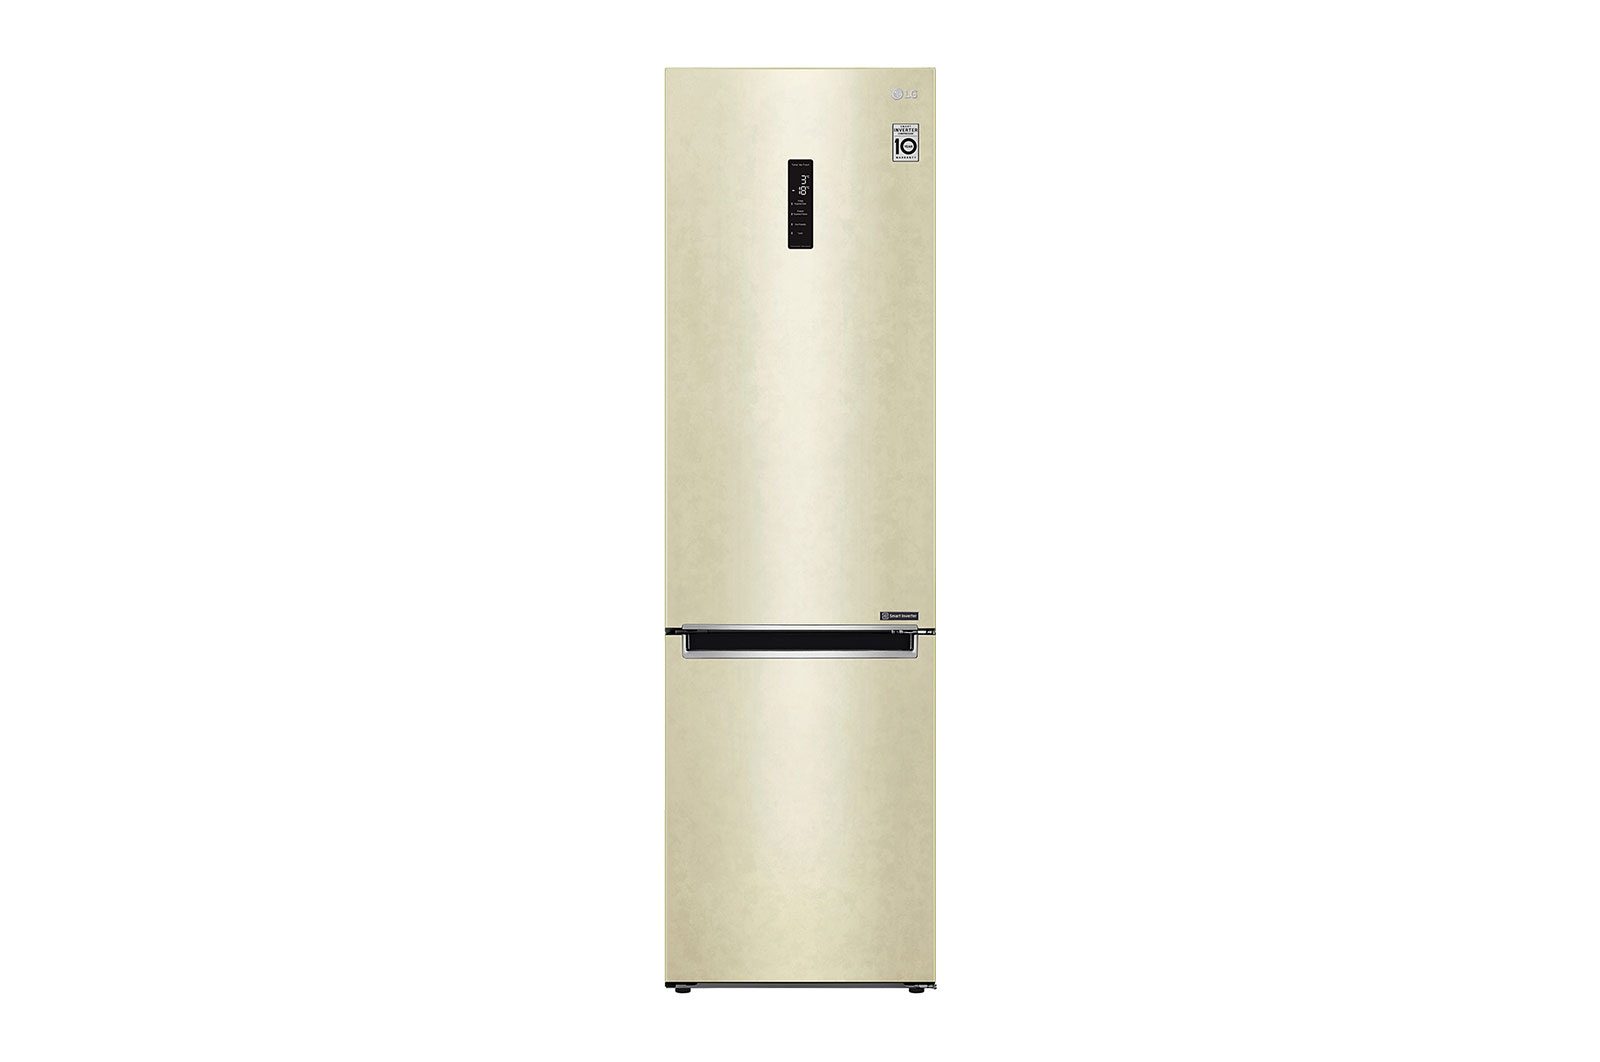 Двухкамерный холодильник lg no frost. LG ga-b449 YEQZ. Холодильник LG ga-b509. LG ga-b459cewl бежевый. Холодильник LG ga-b419seul бежевый.